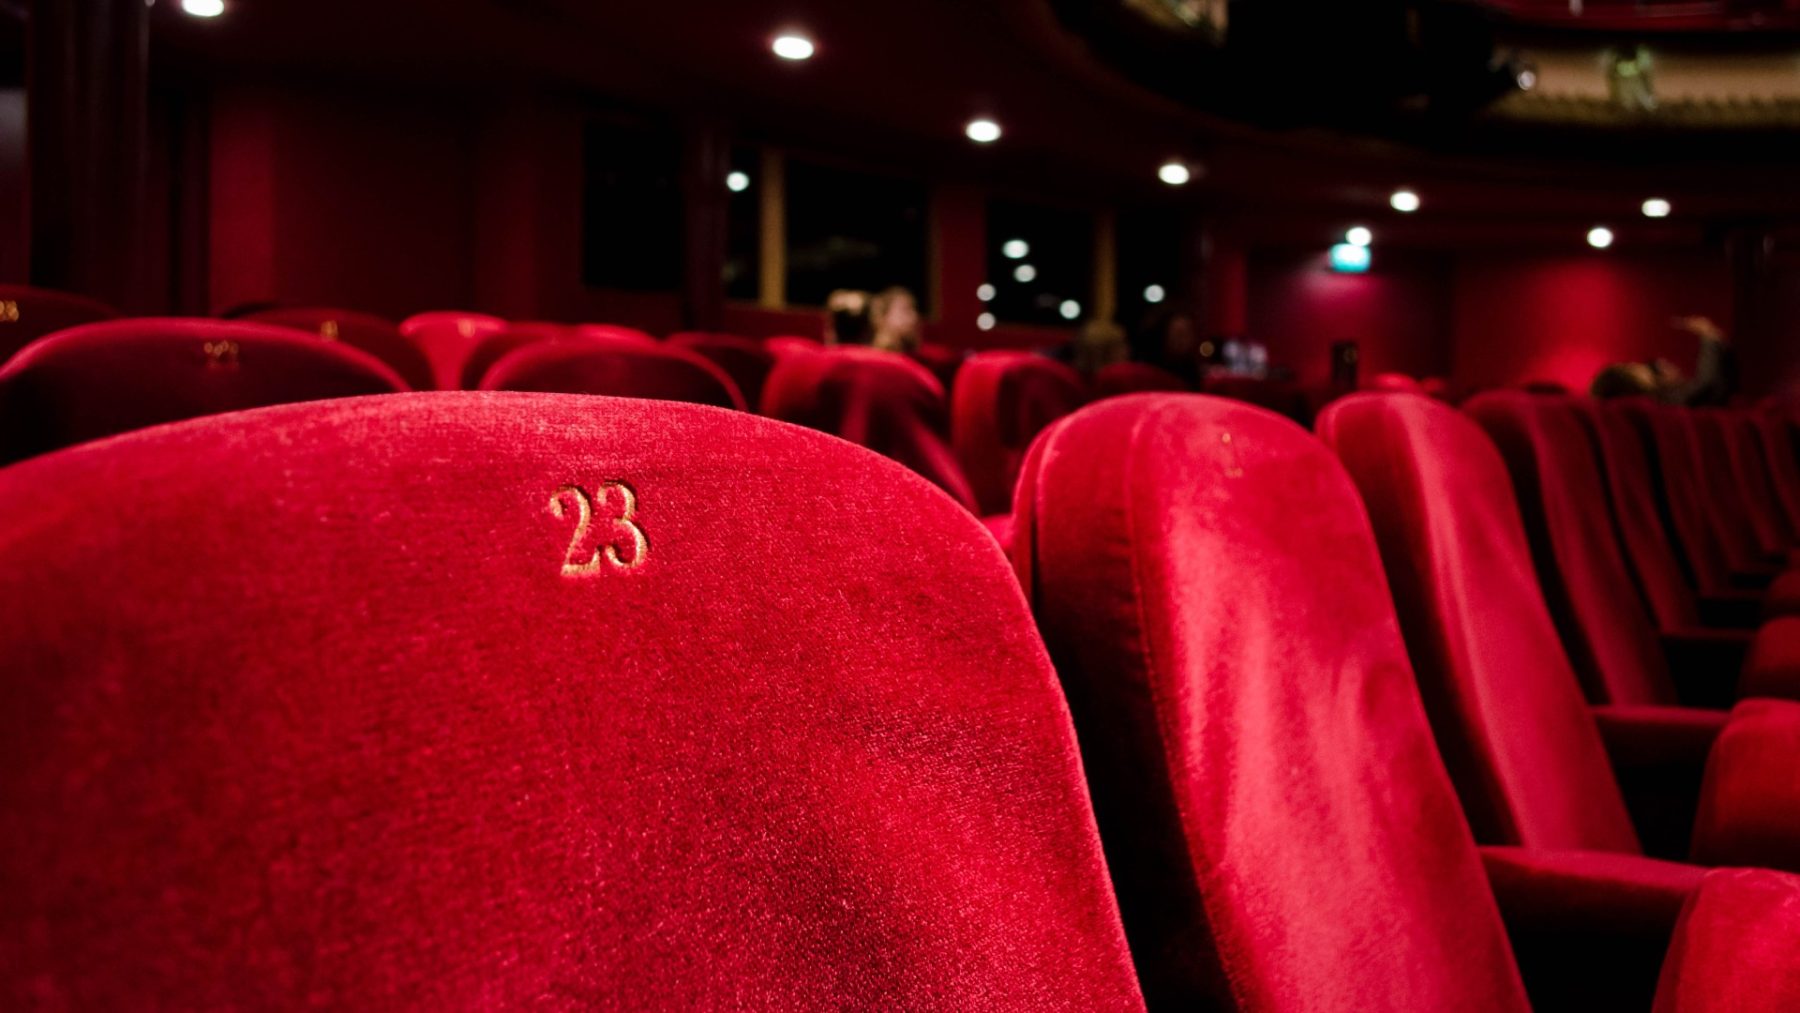 Kabinet wil versoepelen: volle zalen en theaters en horeca open tot 01.00 uur